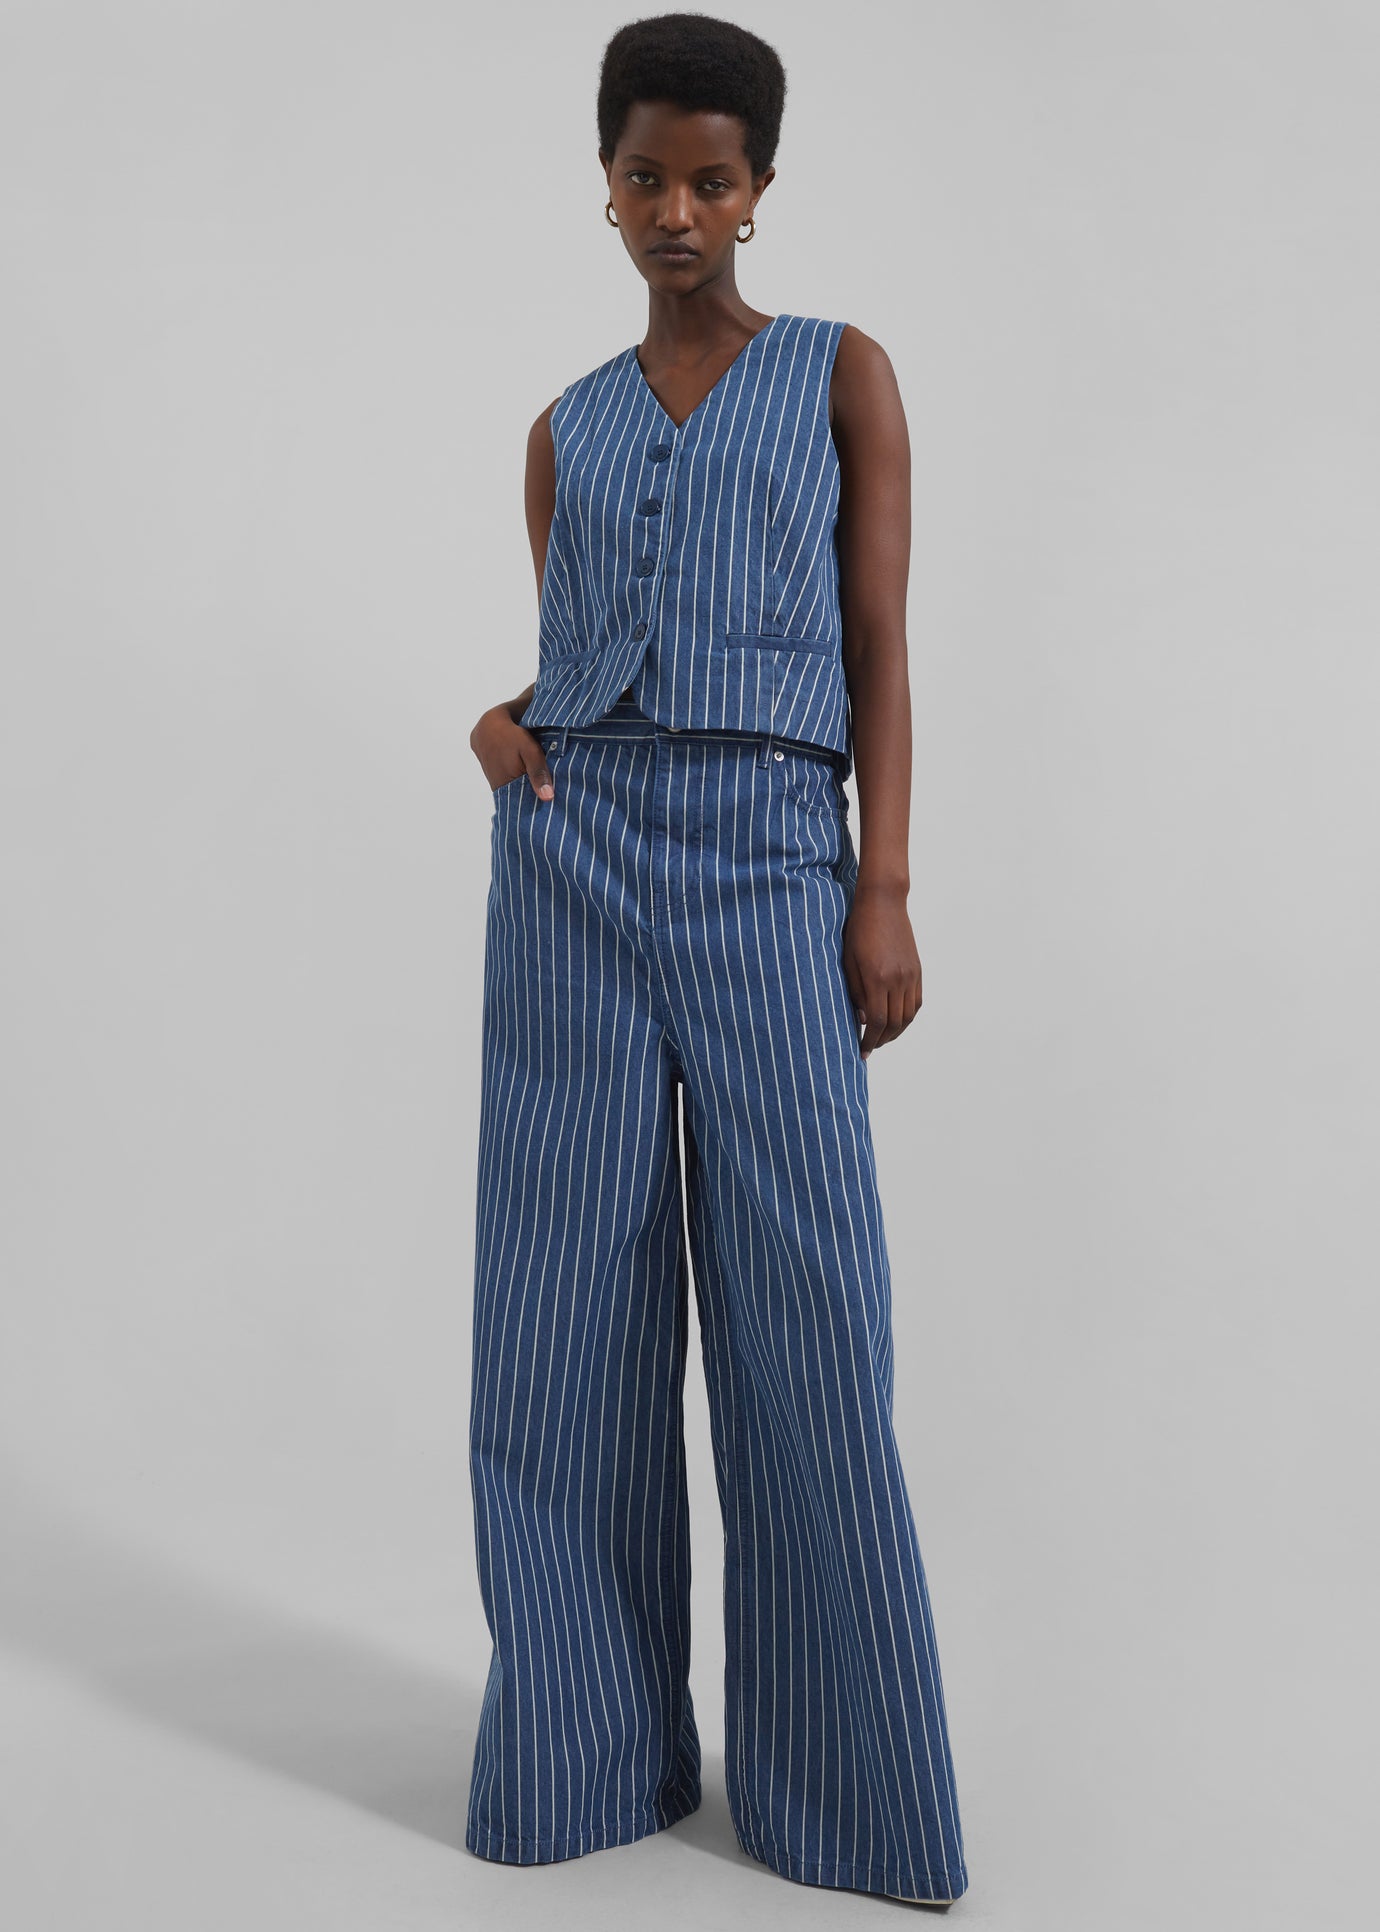 Sasha Wide Leg Jeans - Blue/White Stripe - 1